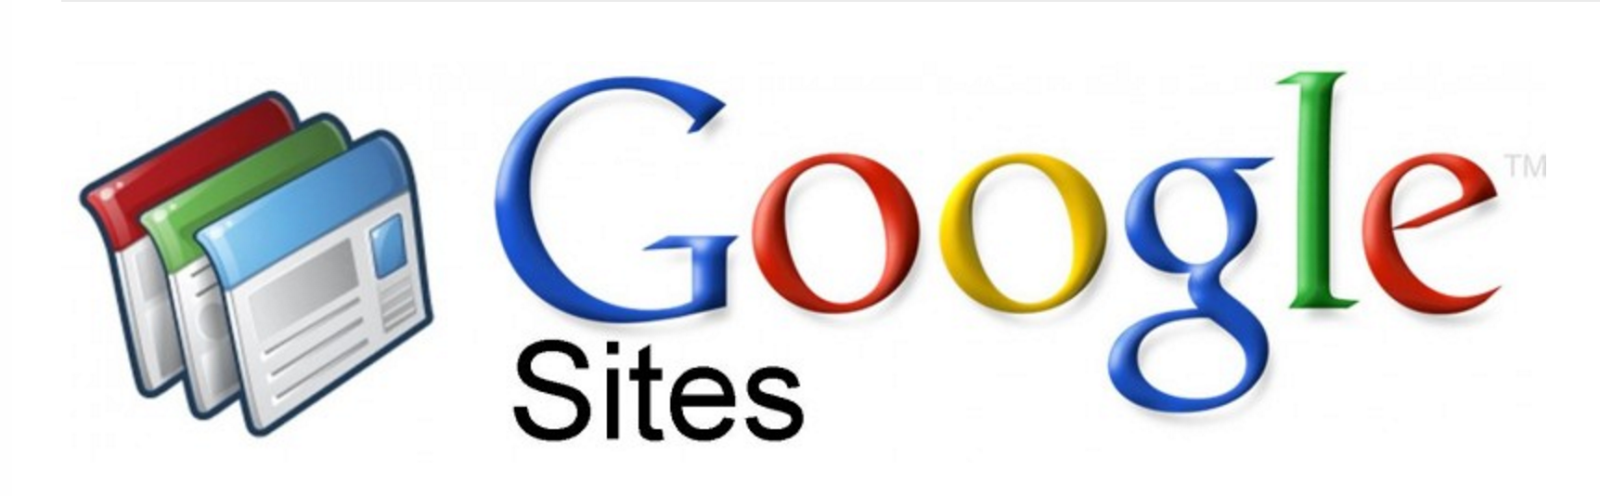 Site google ru. Гугл конструктор сайтов. Google sites. Карусель изображений в гугл сайт. Google sites окно.